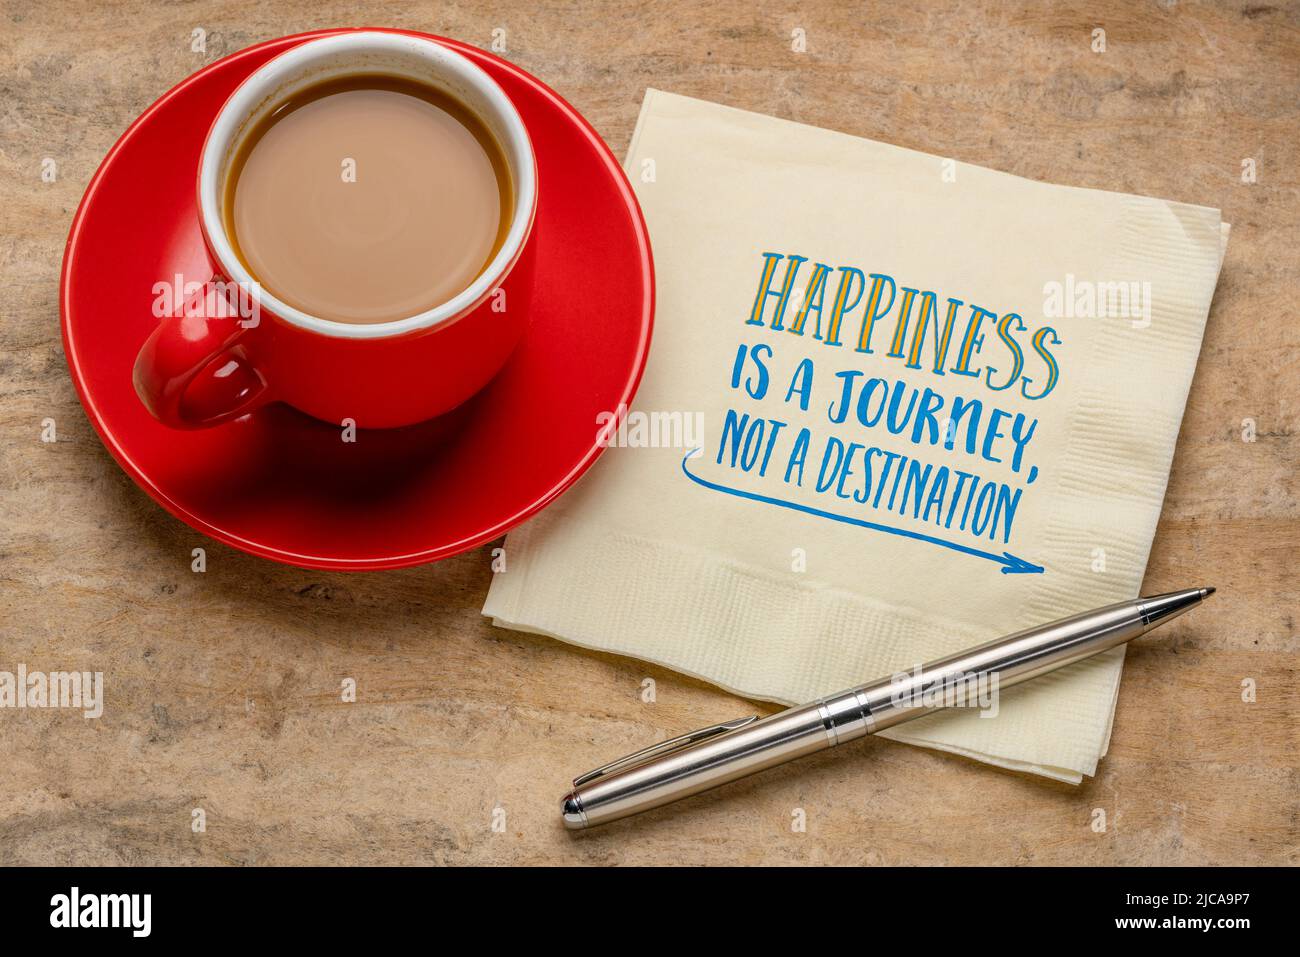 Glück ist eine Reise, kein Ziel, inspirierende Note - Handschrift auf Serviette mit einer Tasse Kaffee, persönliches Entwicklungskonzept Stockfoto